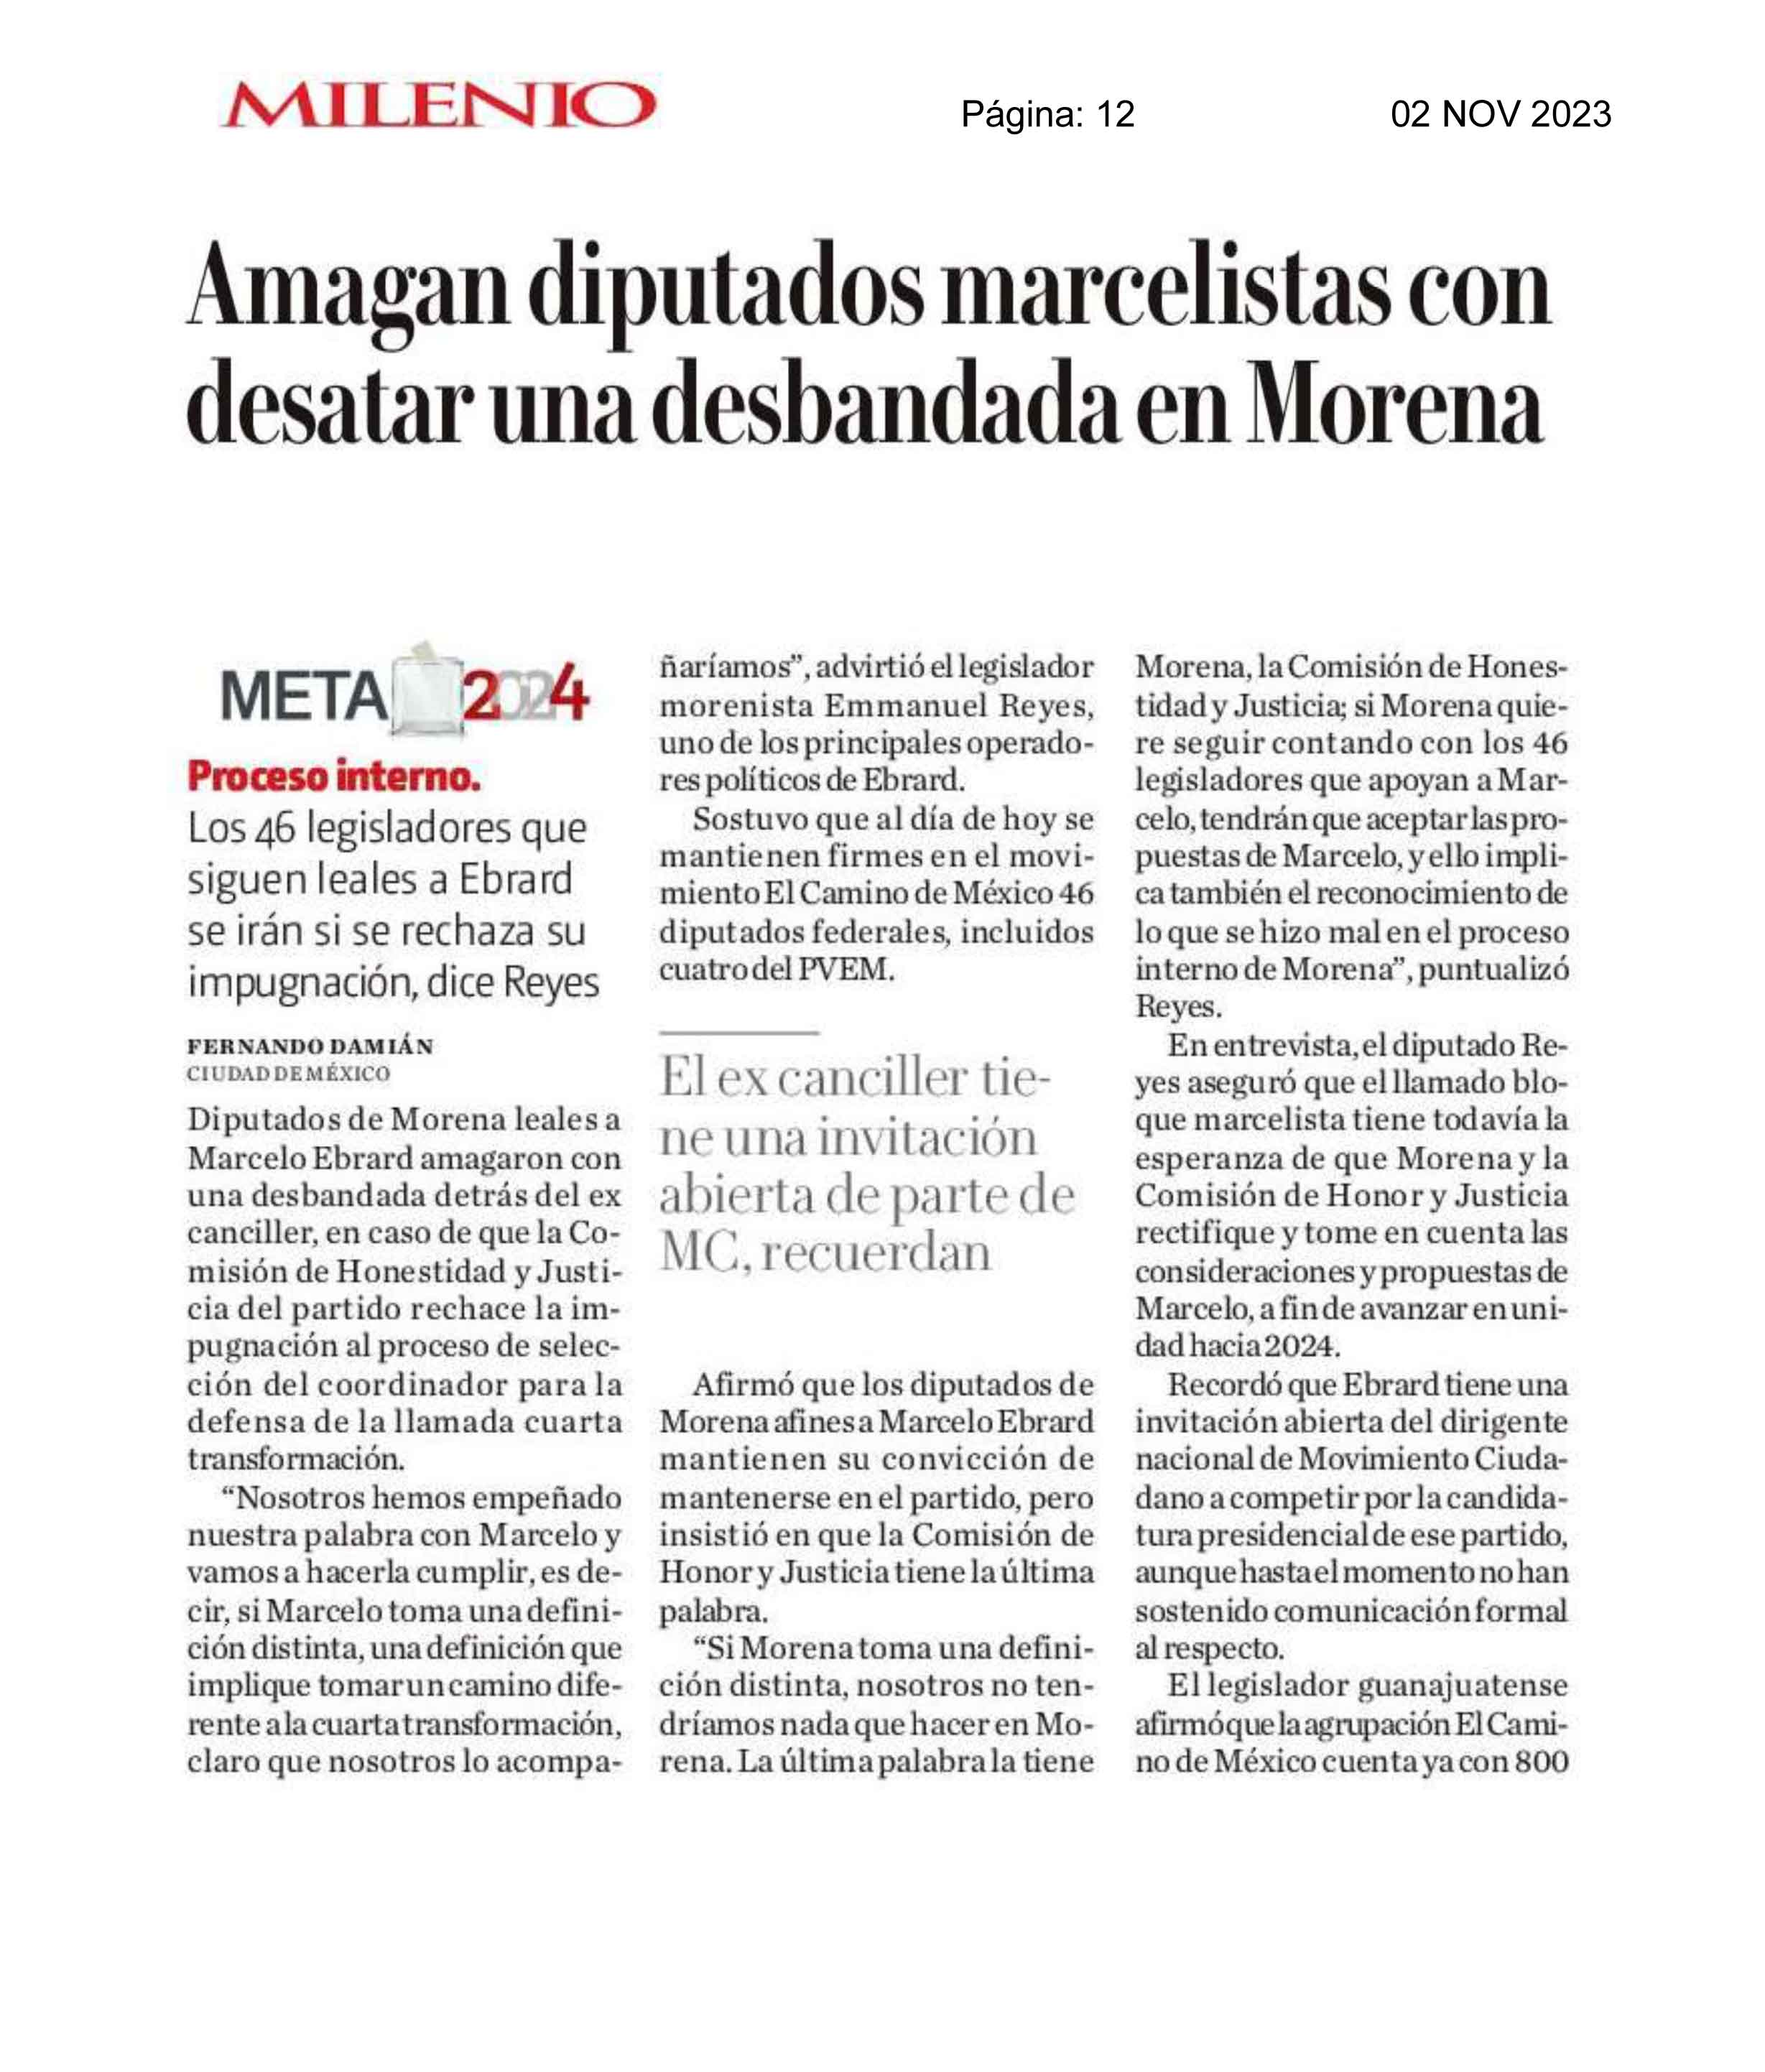 Amagan diputados marcelistas con desatar una desbandada en Morena